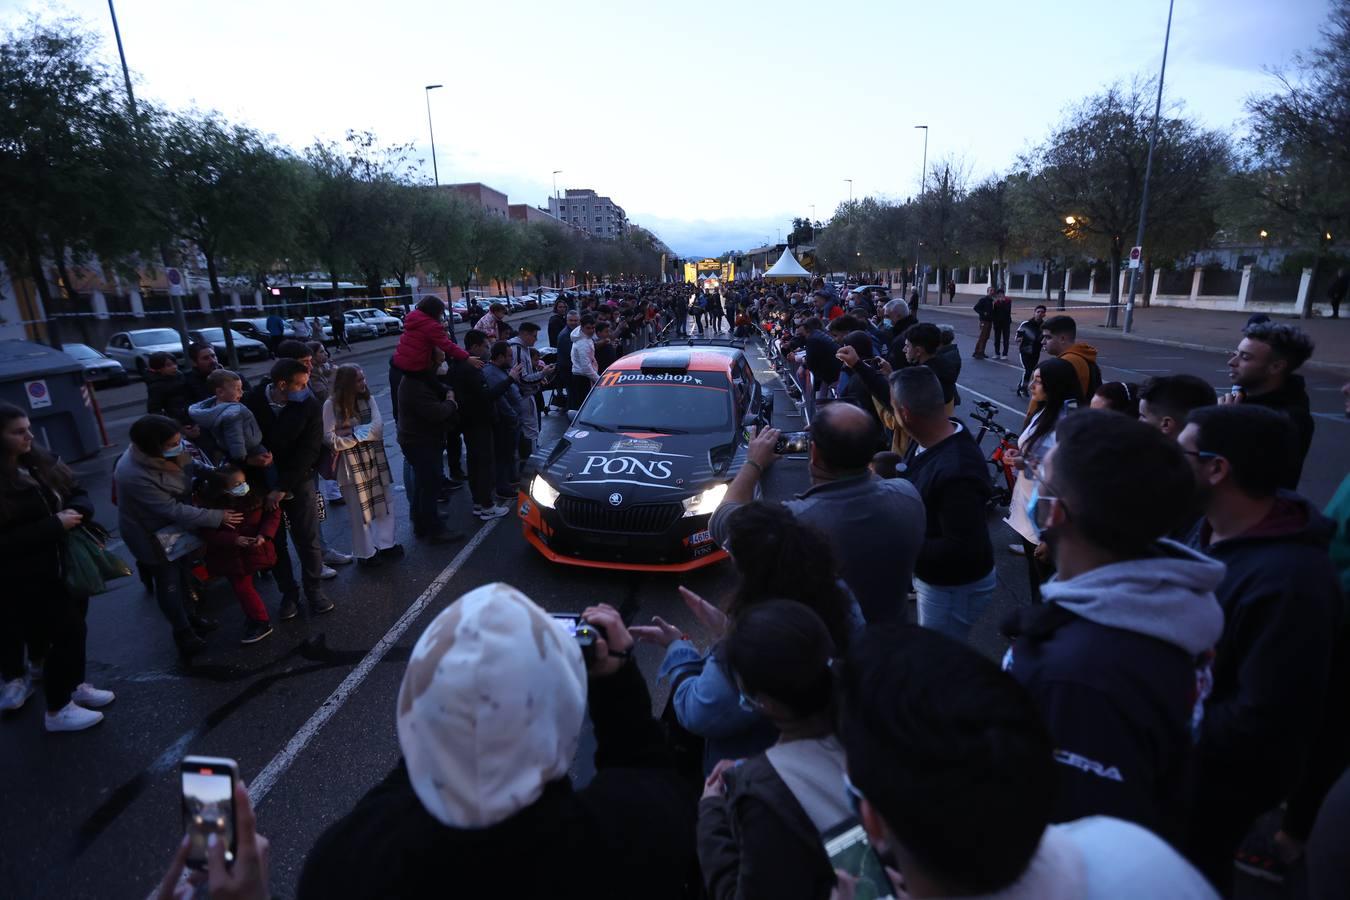 La ceremonia de salida del Rallye Sierra Morena 2022, en imágenes